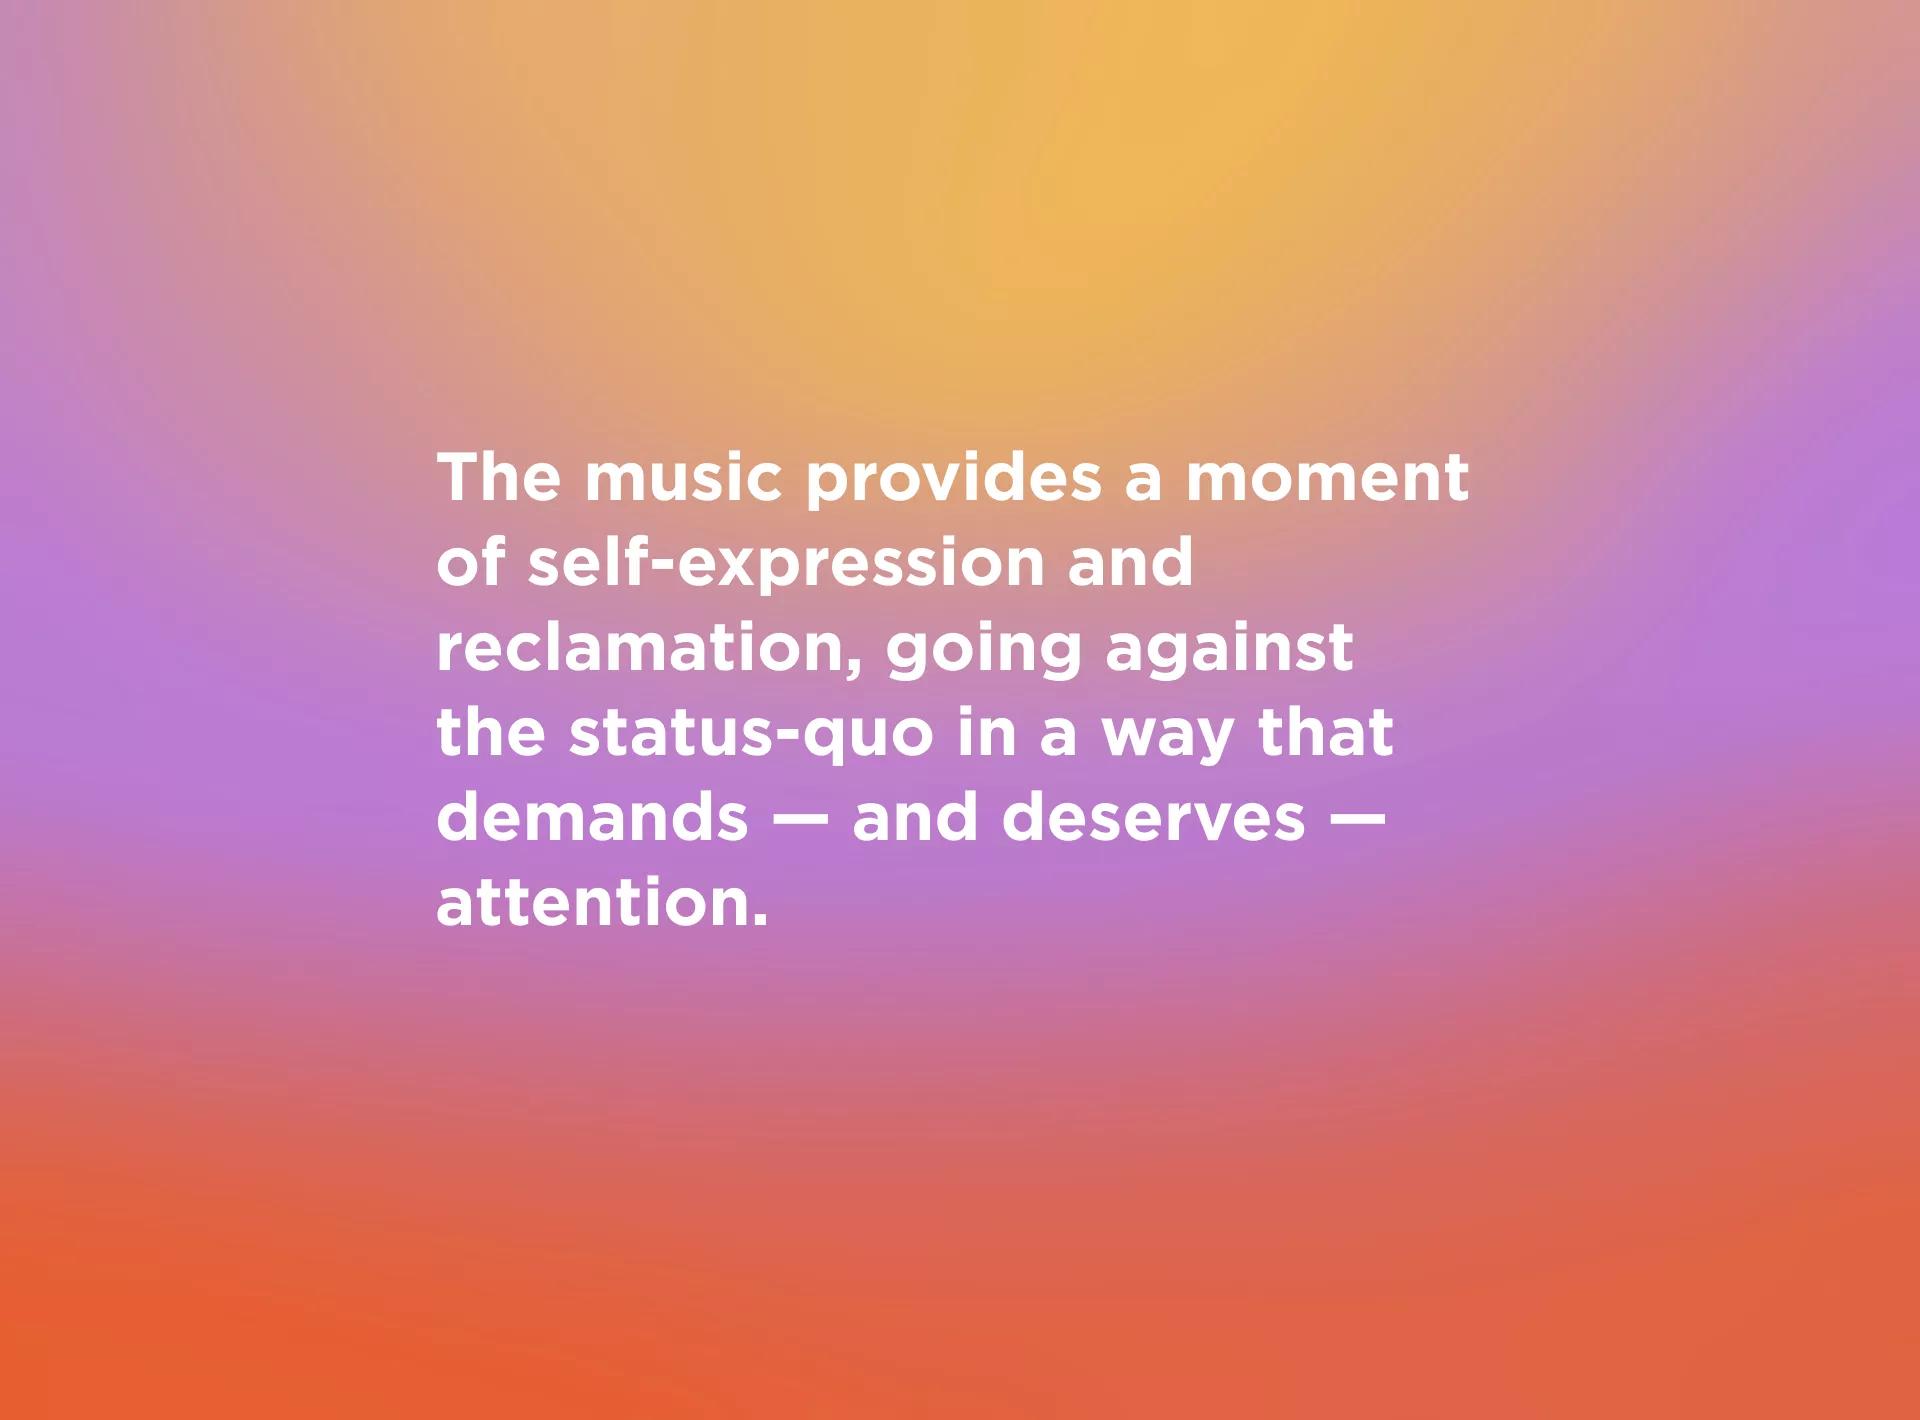 La musique permet de vivre un moment de revendication et d’expression de soi et va à l’encontre du statu quo d’une façon qui réclame – et qui mérite – toute l’attention.